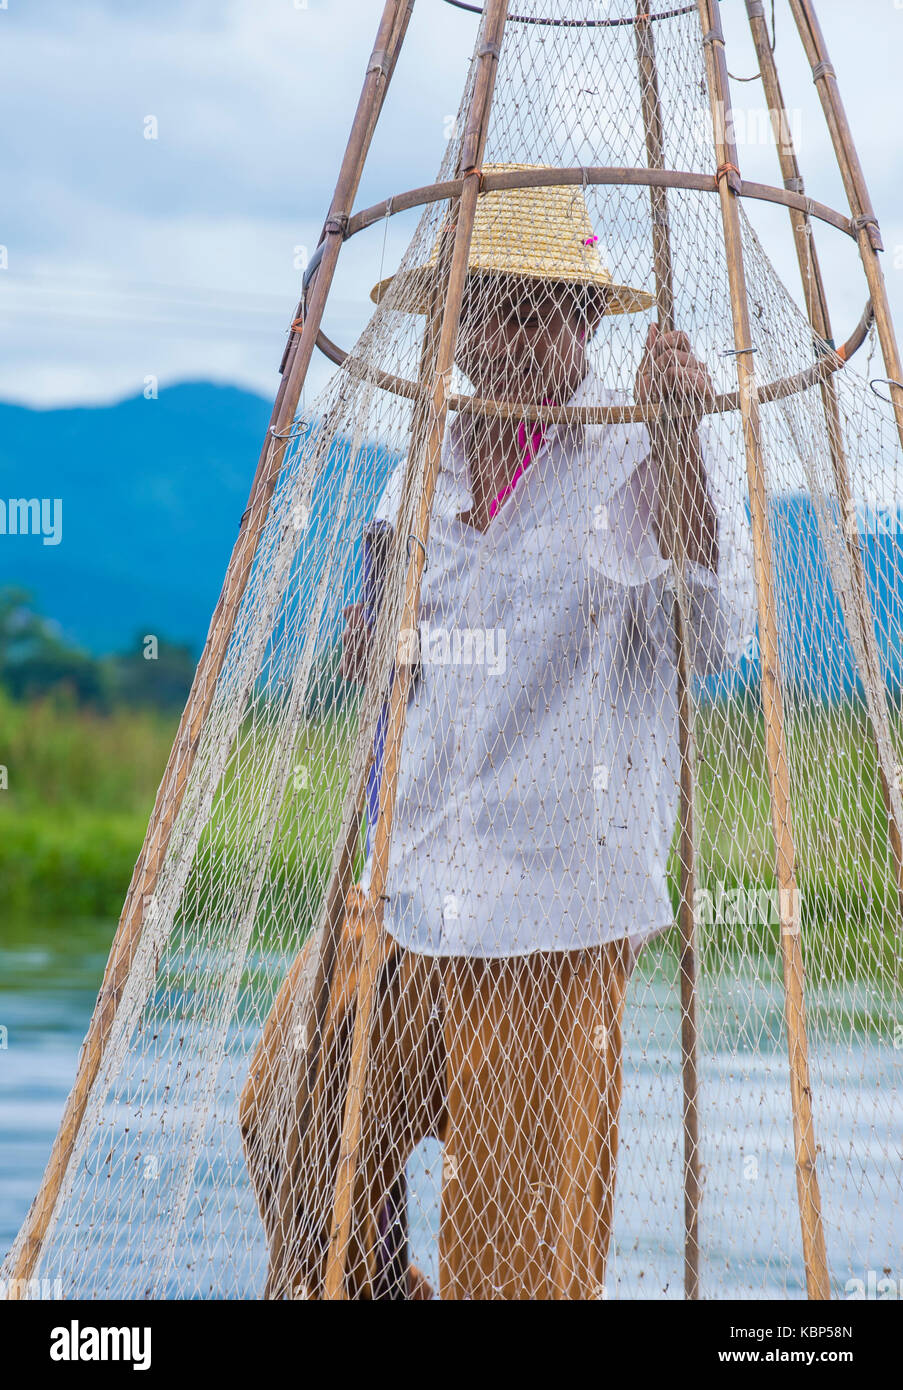 INLE SEE, MYANMAR - 07.SEPTEMBER: burmesische Fischer am Inle Lake Myanmar am 07 September 2017, Inle See ist ein Süßwassersee in Shan Staat entfernt Stockfoto